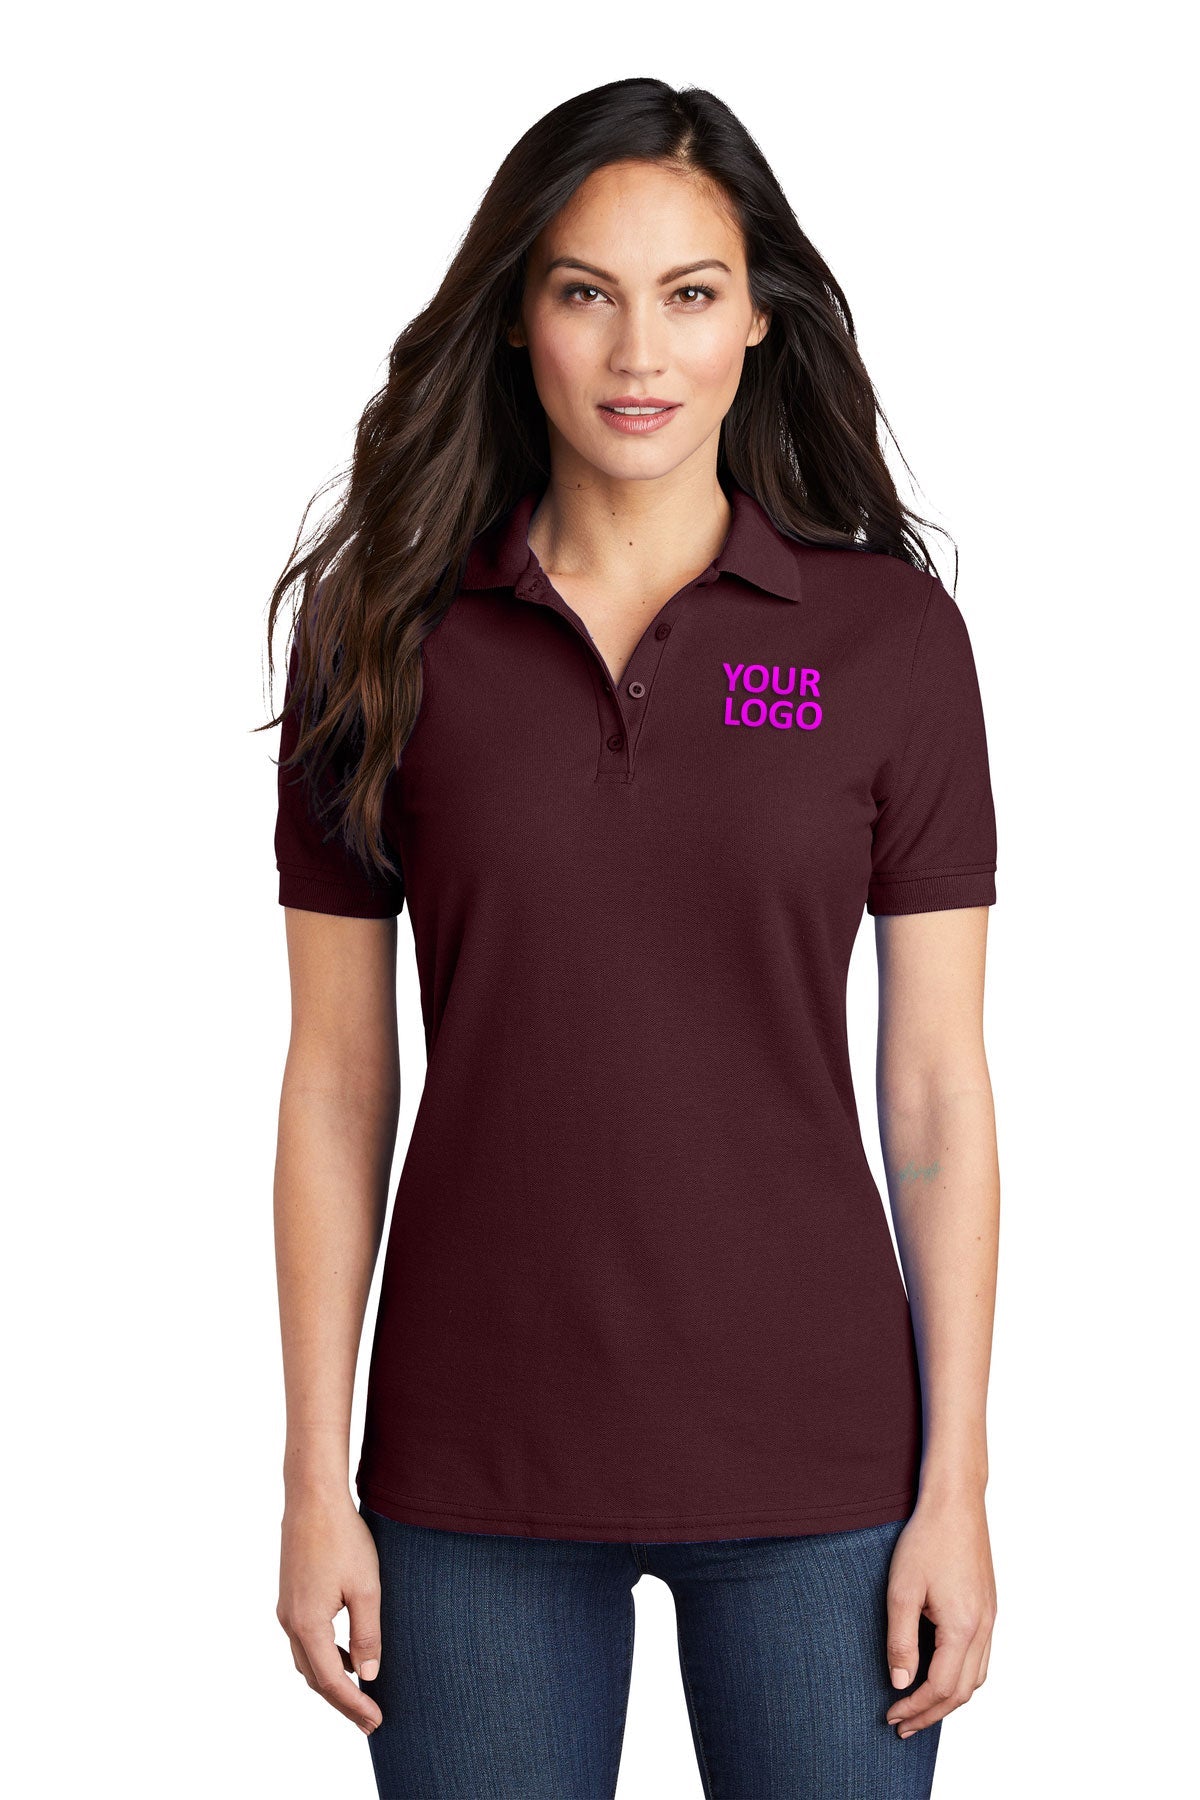 port & company athletic maroon lkp155 custom polo shirts with logo